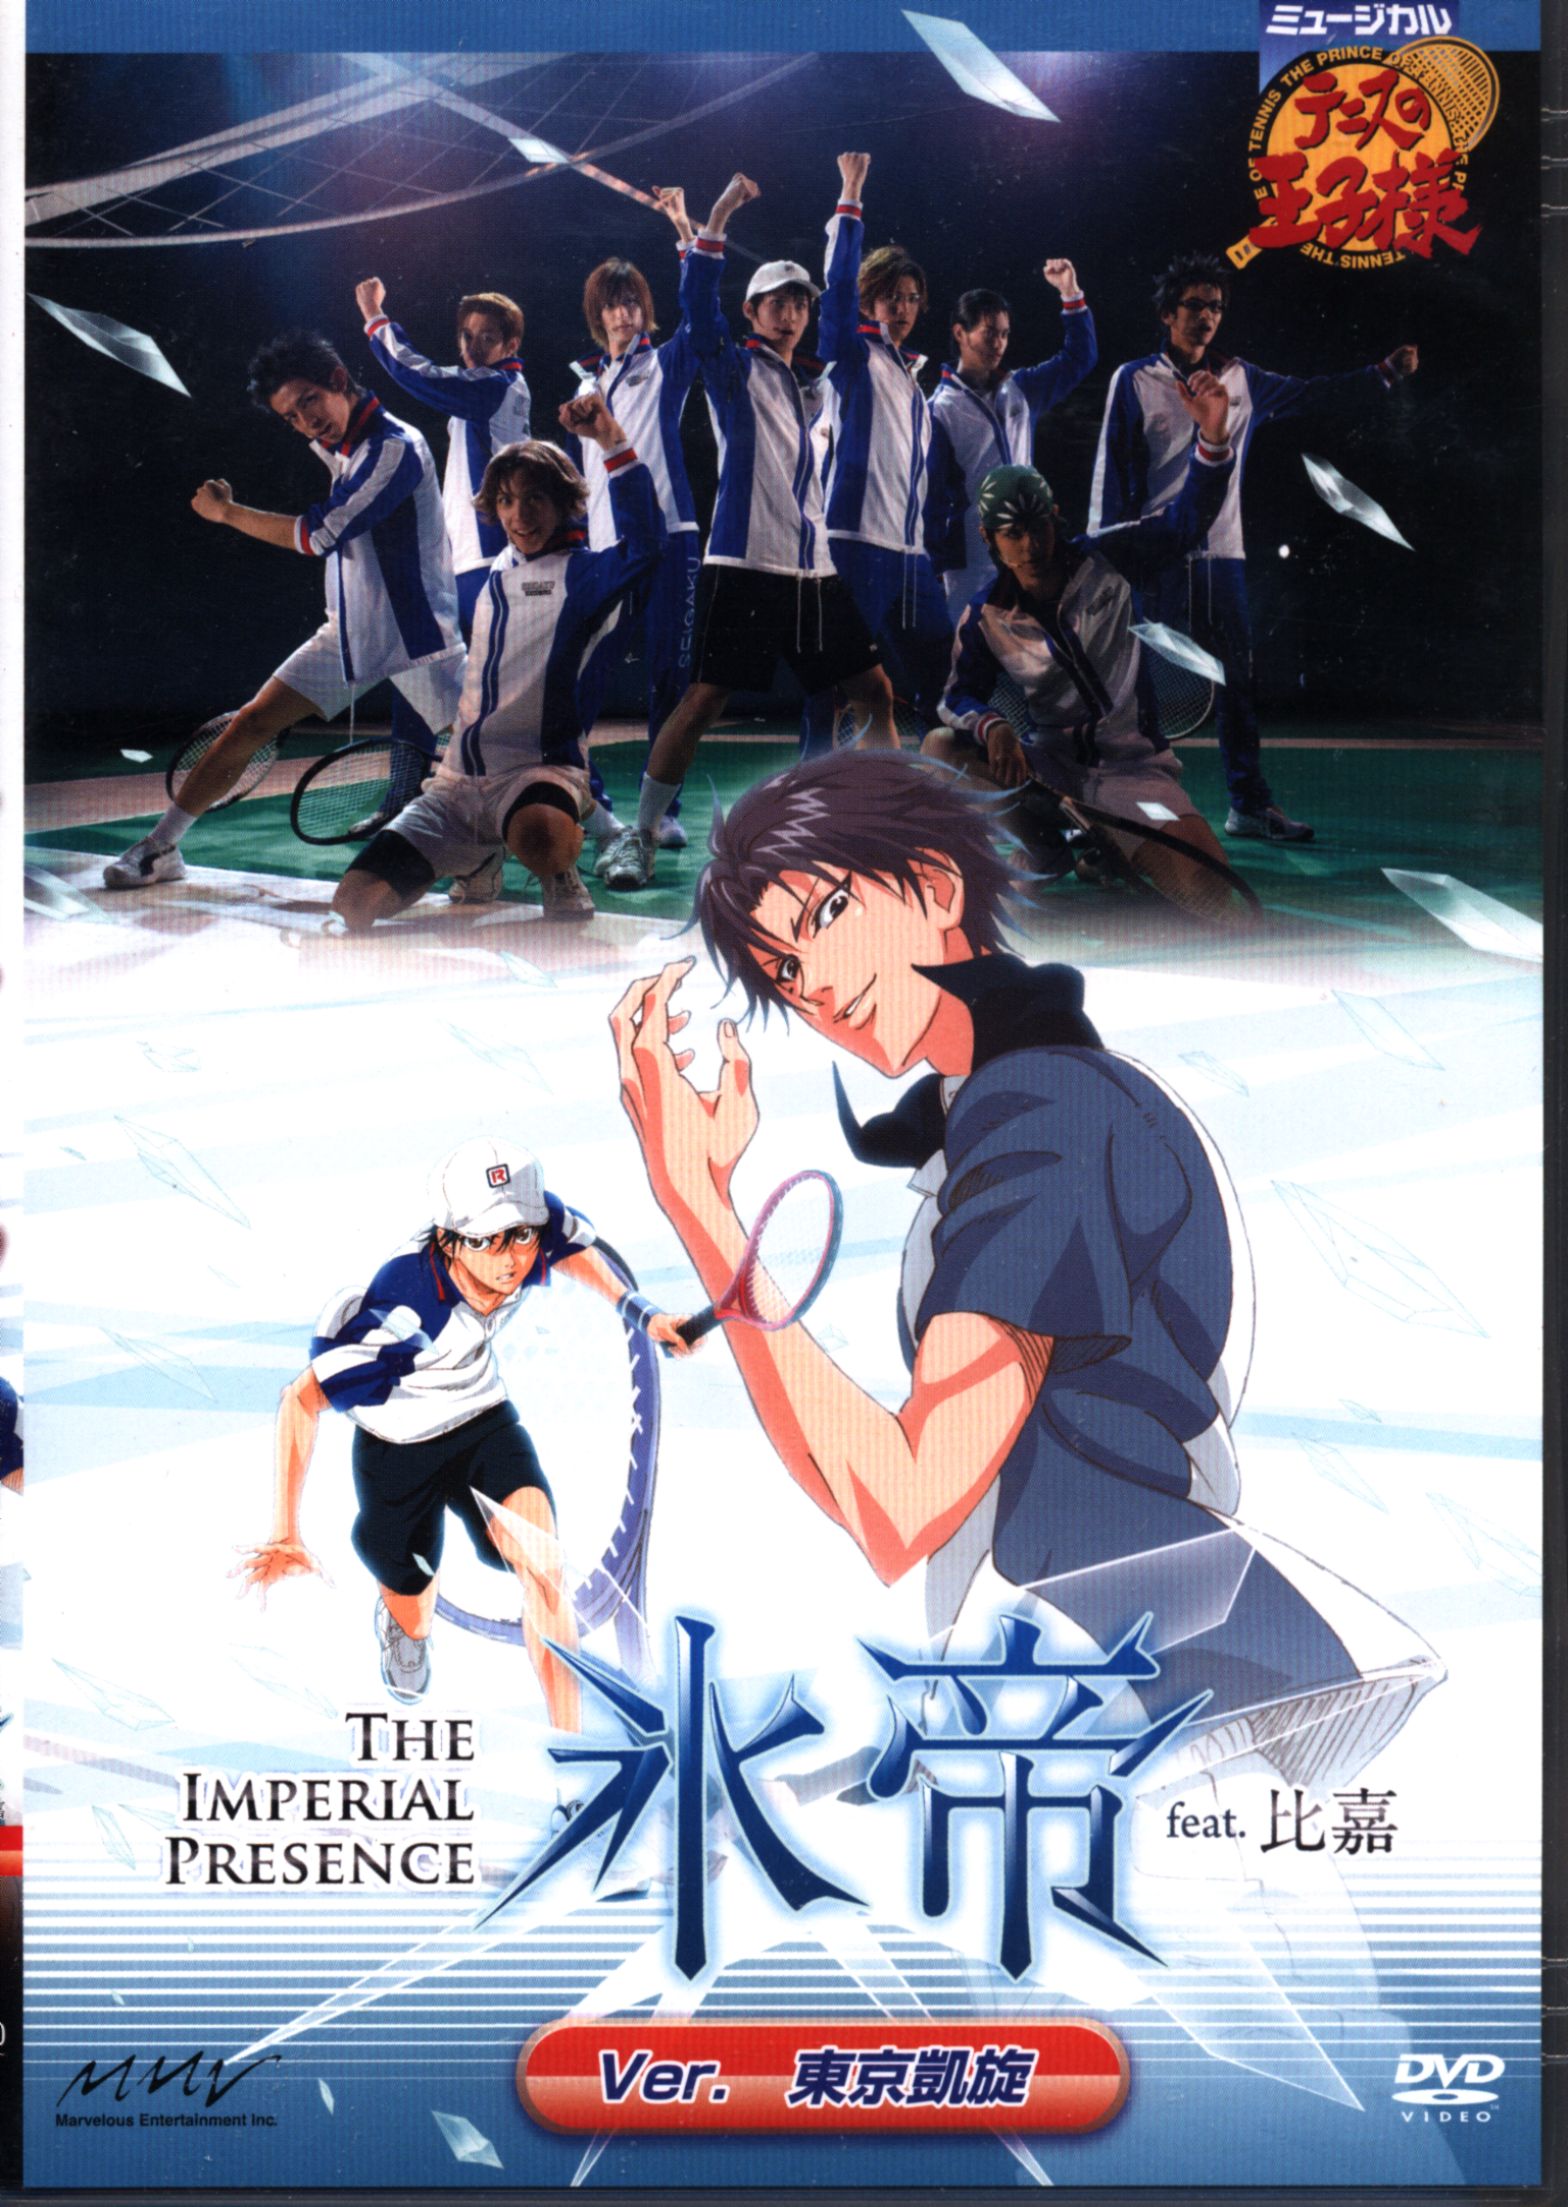 舞台DVD 初回)氷帝 feat.比嘉ver.東京凱旋/ミュージカルテニスの王子様